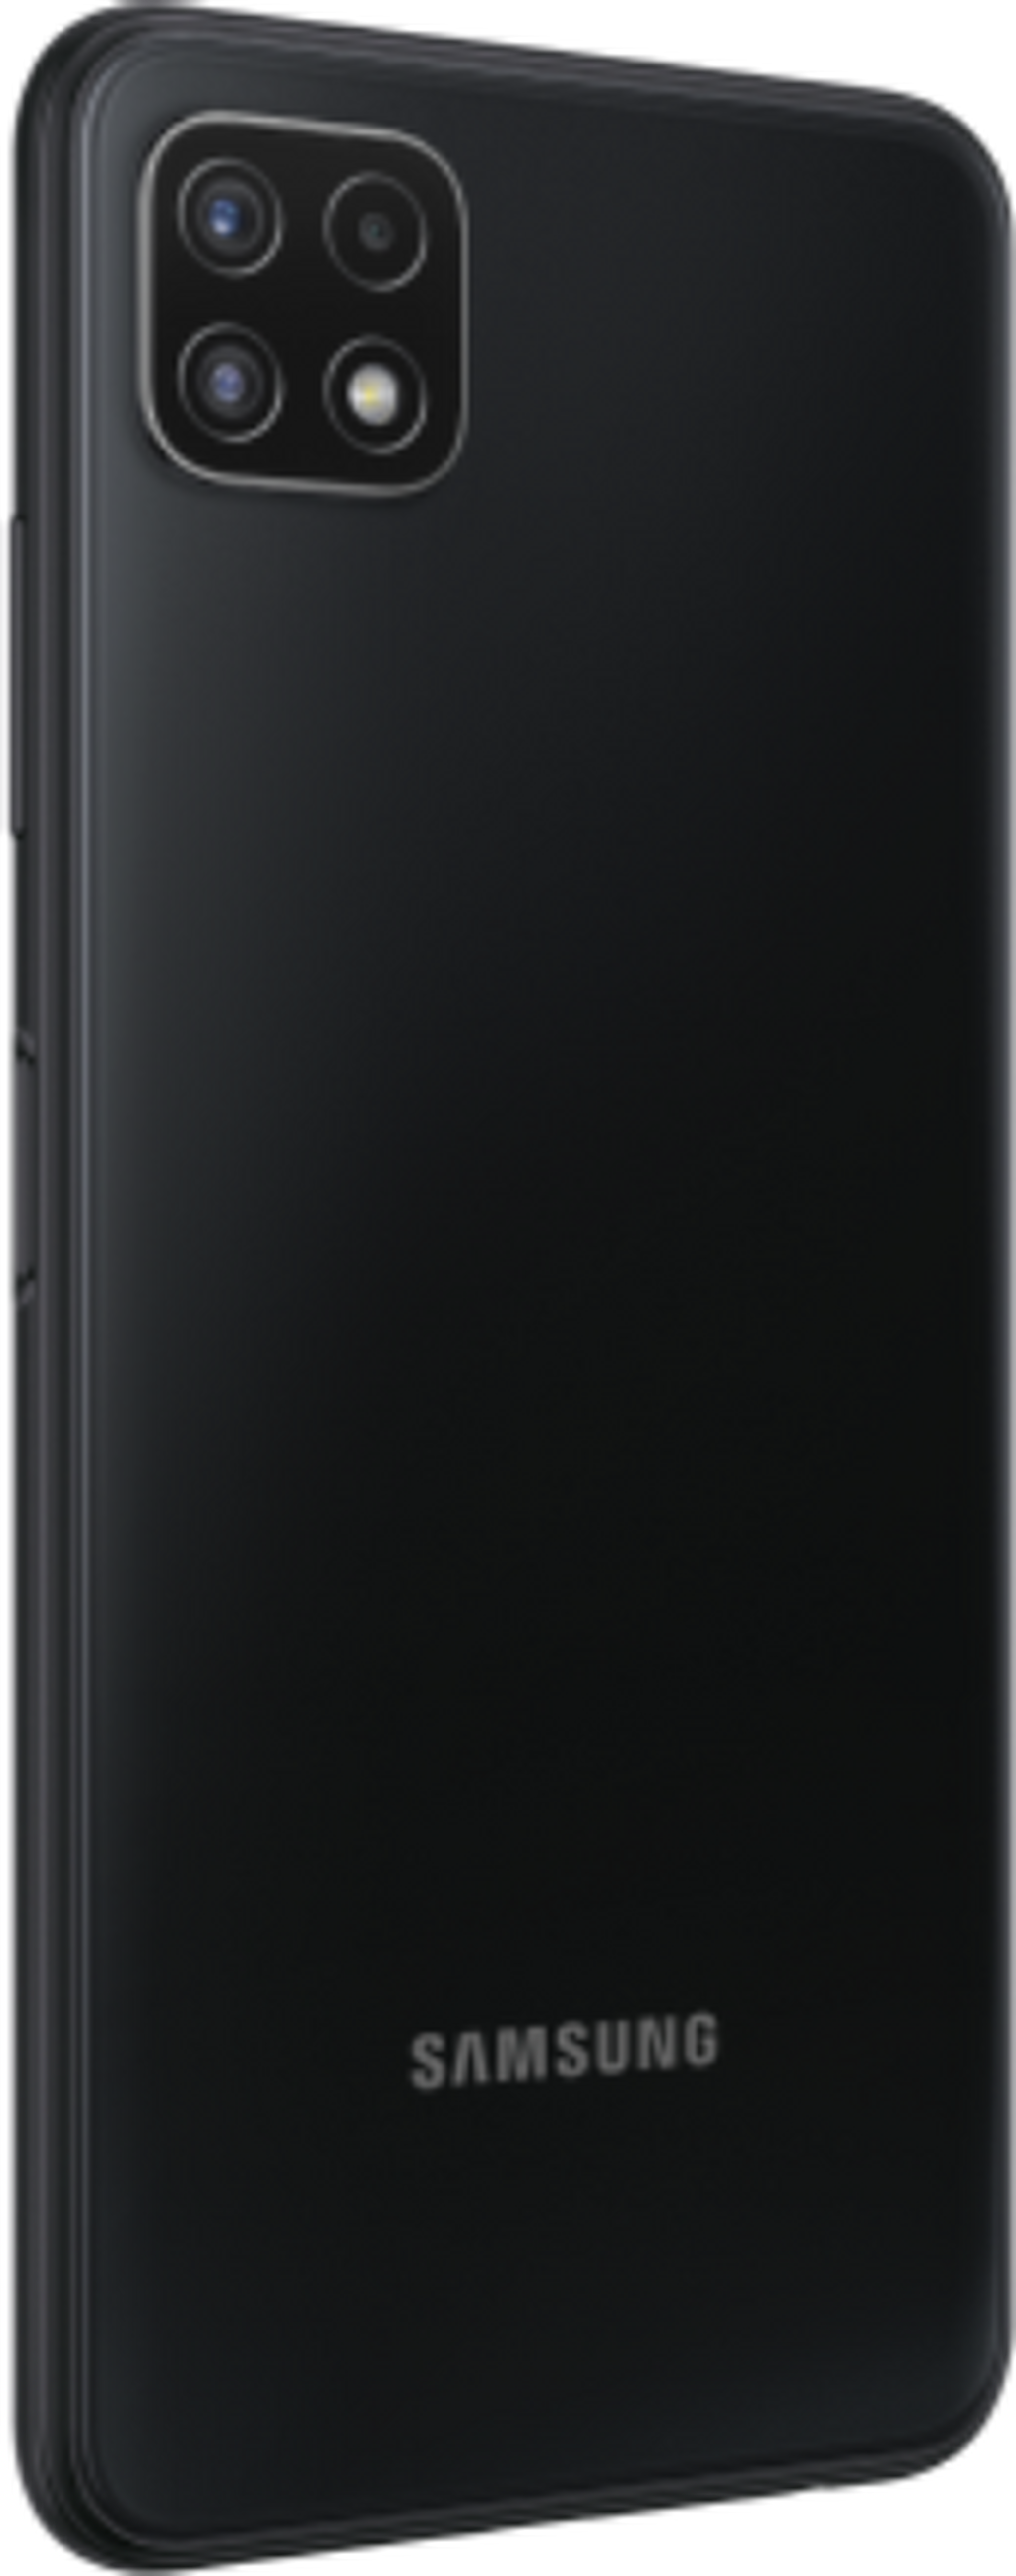 Samsung Galaxy A22 128GB Phone - Black